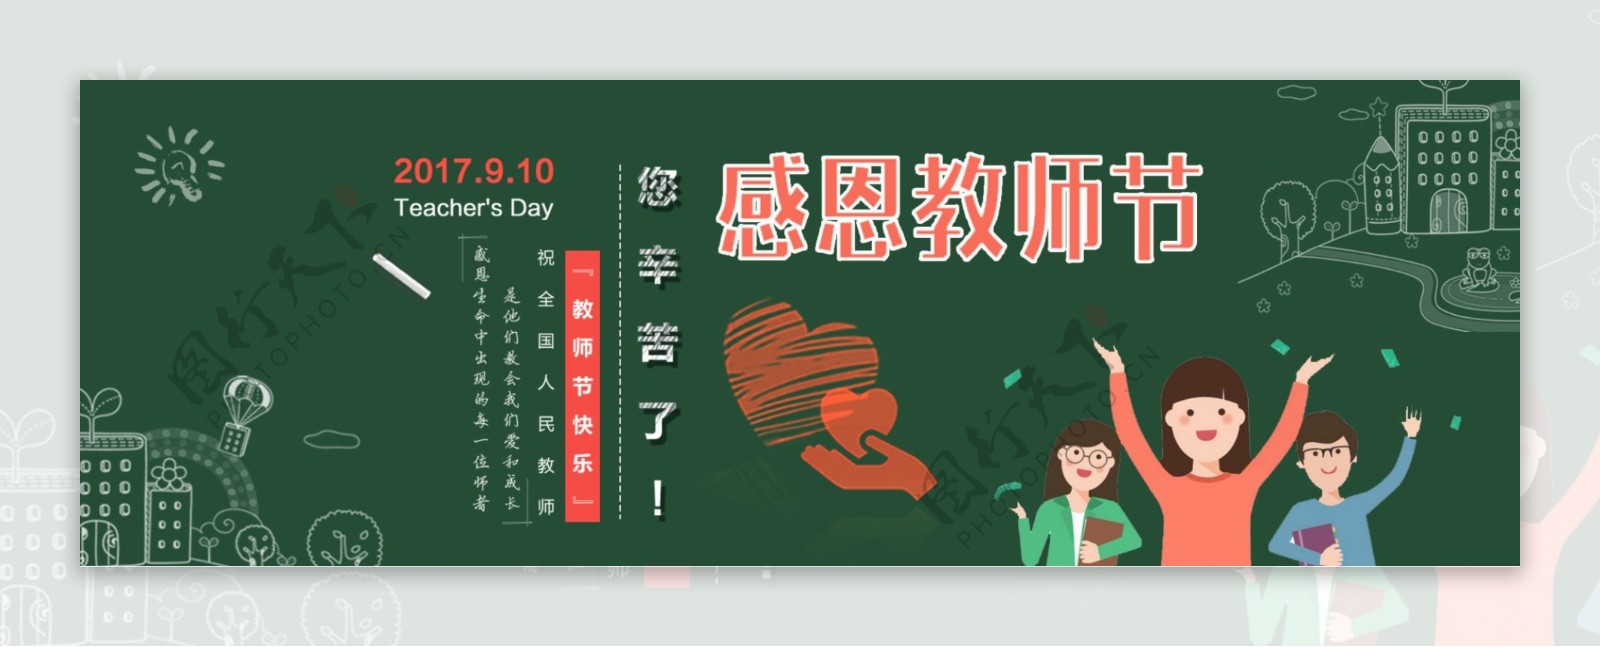 墨绿黑板报粉笔字感恩教师节电商促销banner海报